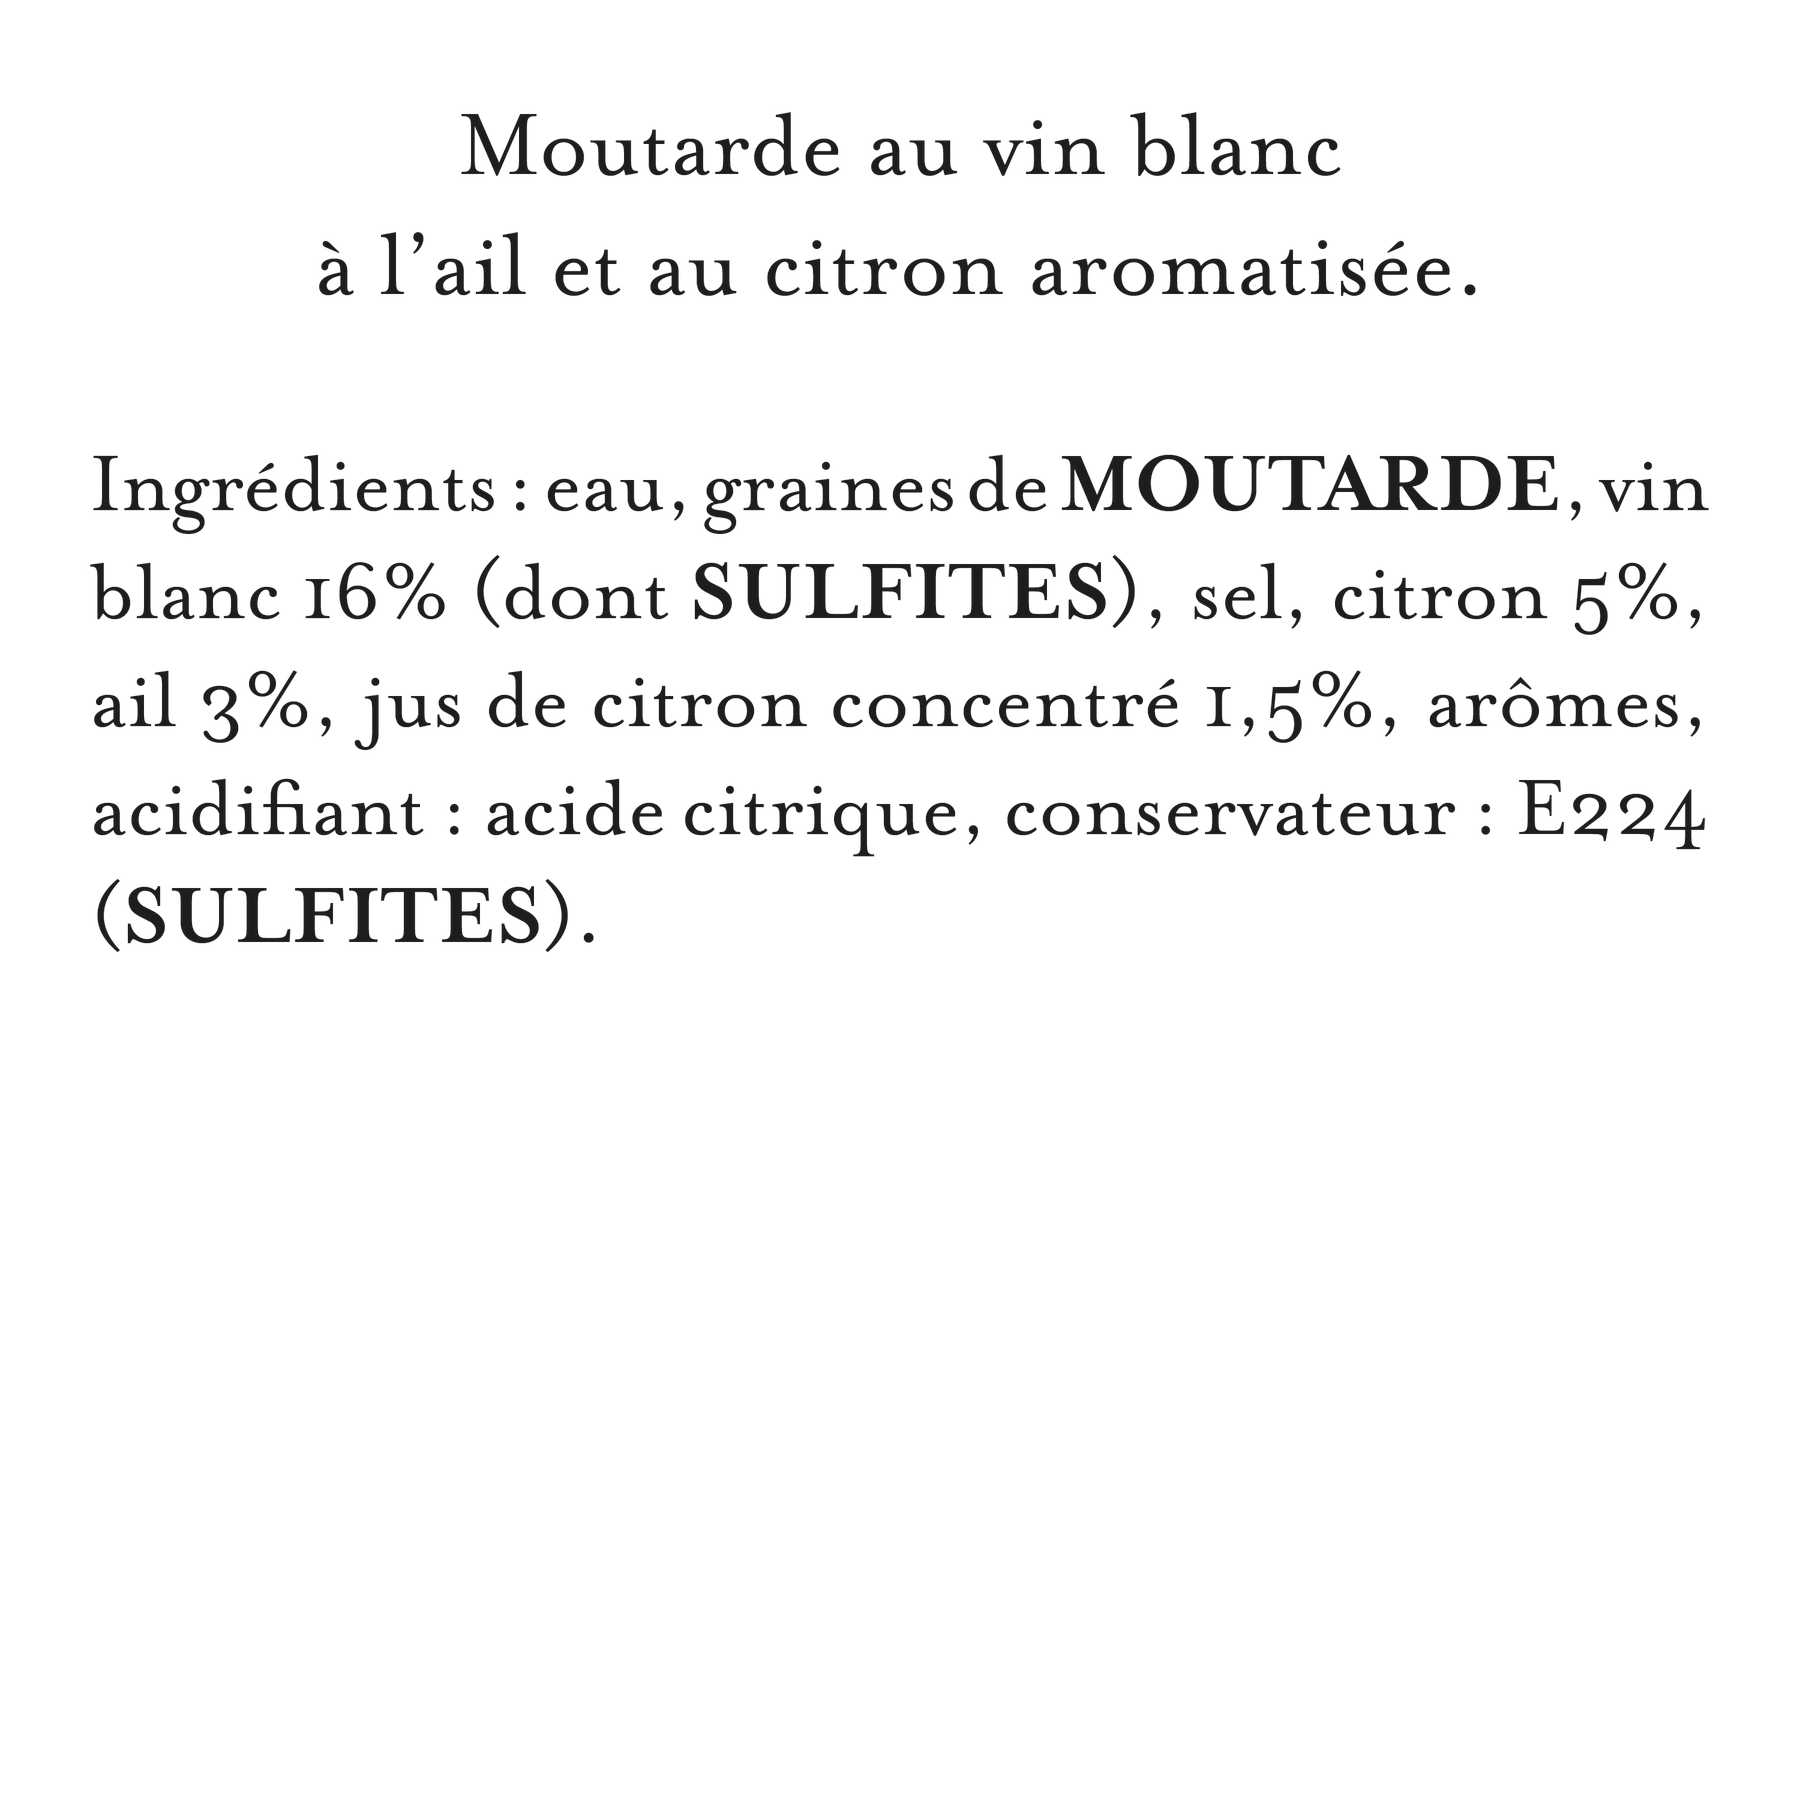 Maille - Moutarde au vin blanc, ail et citron, 108 g, liste d'ingrédients